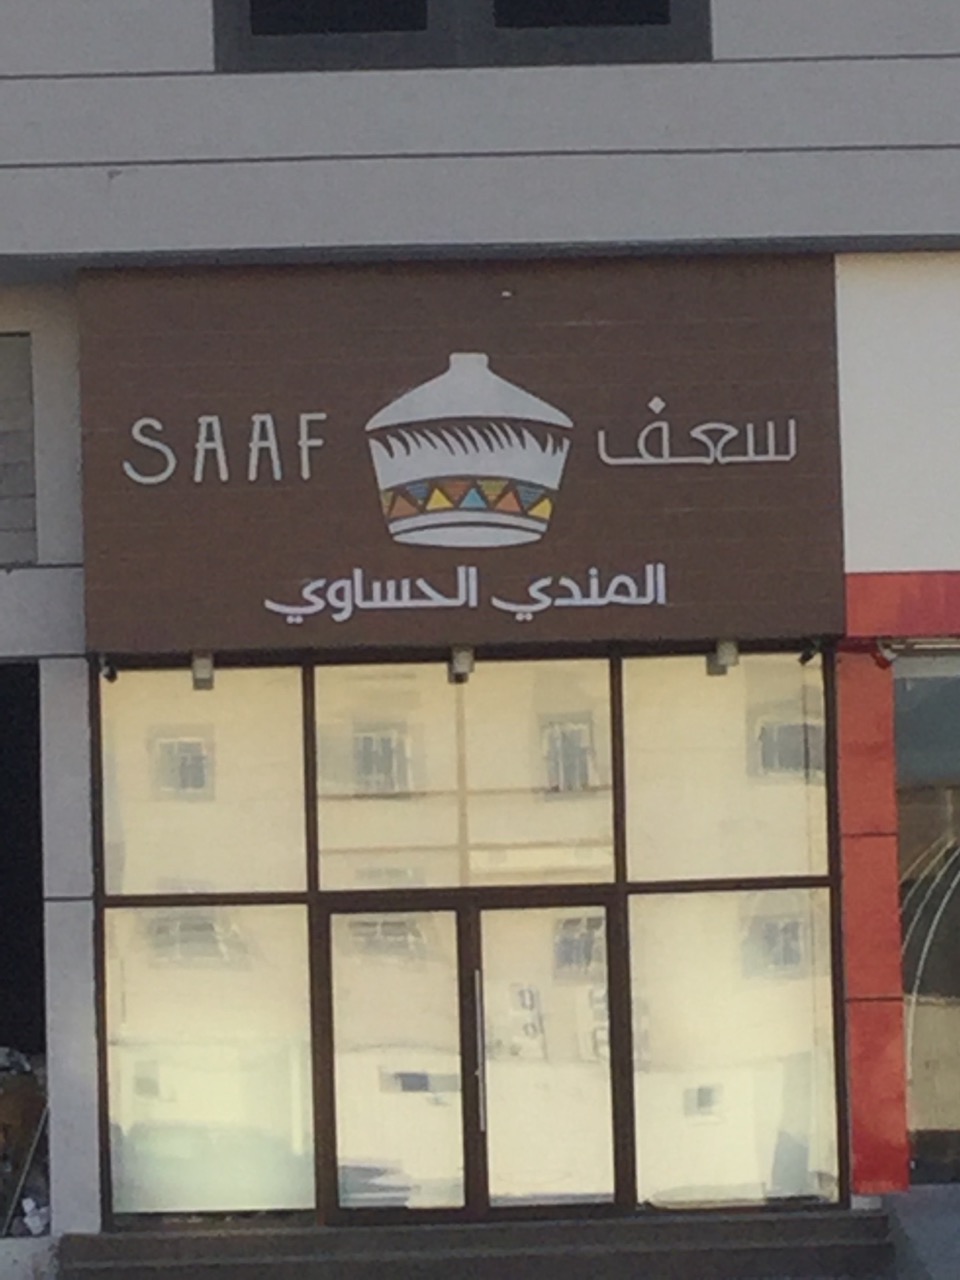 Saaf Restaurant